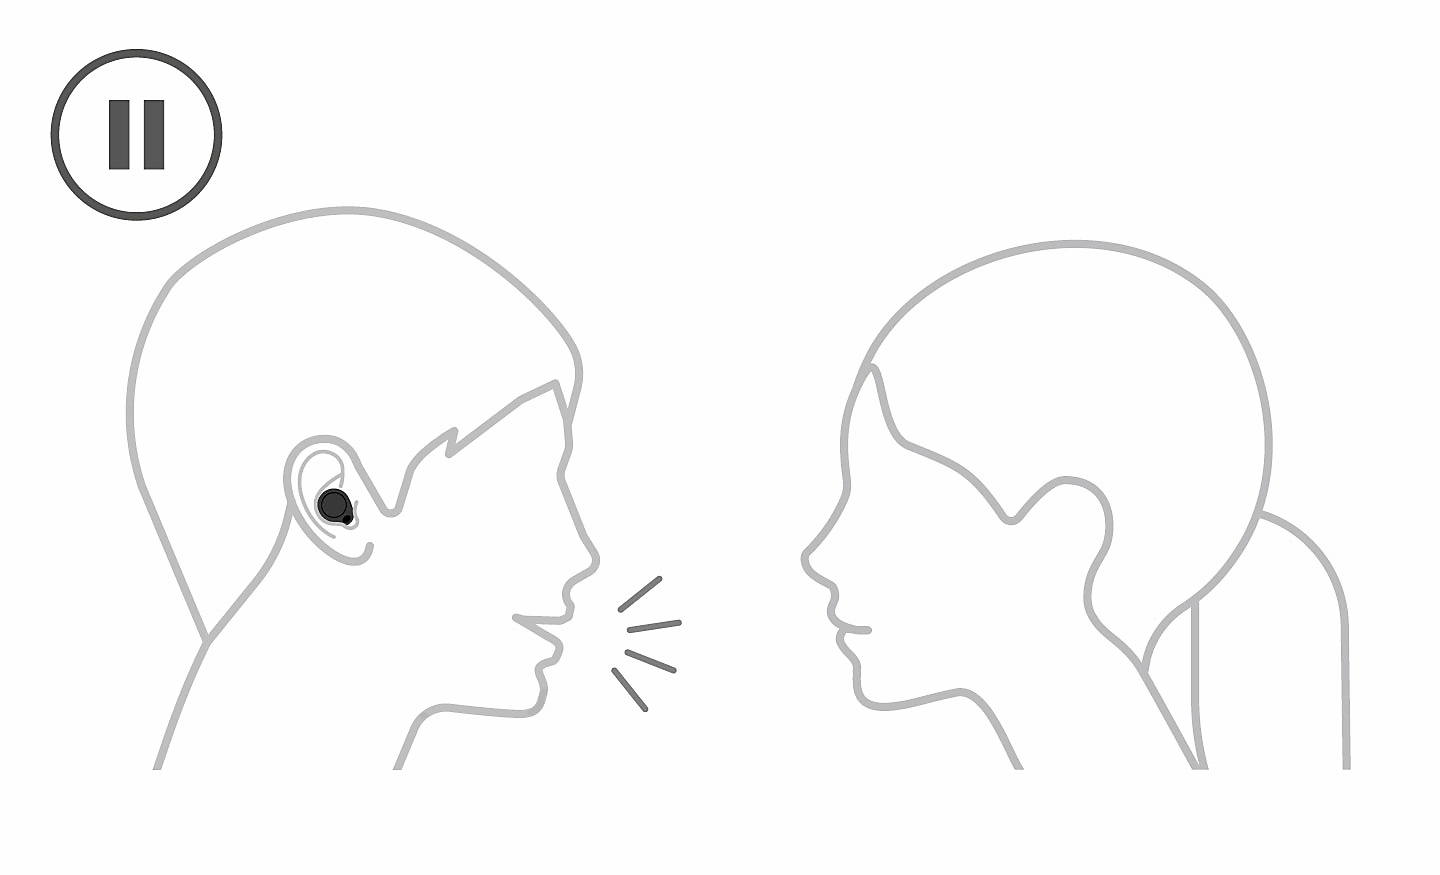 Dessin au trait d'une personne portant un casque/des écouteurs en train de parler à une personne sans casque/écouteurs. Une icône pause est visible en haut à gauche